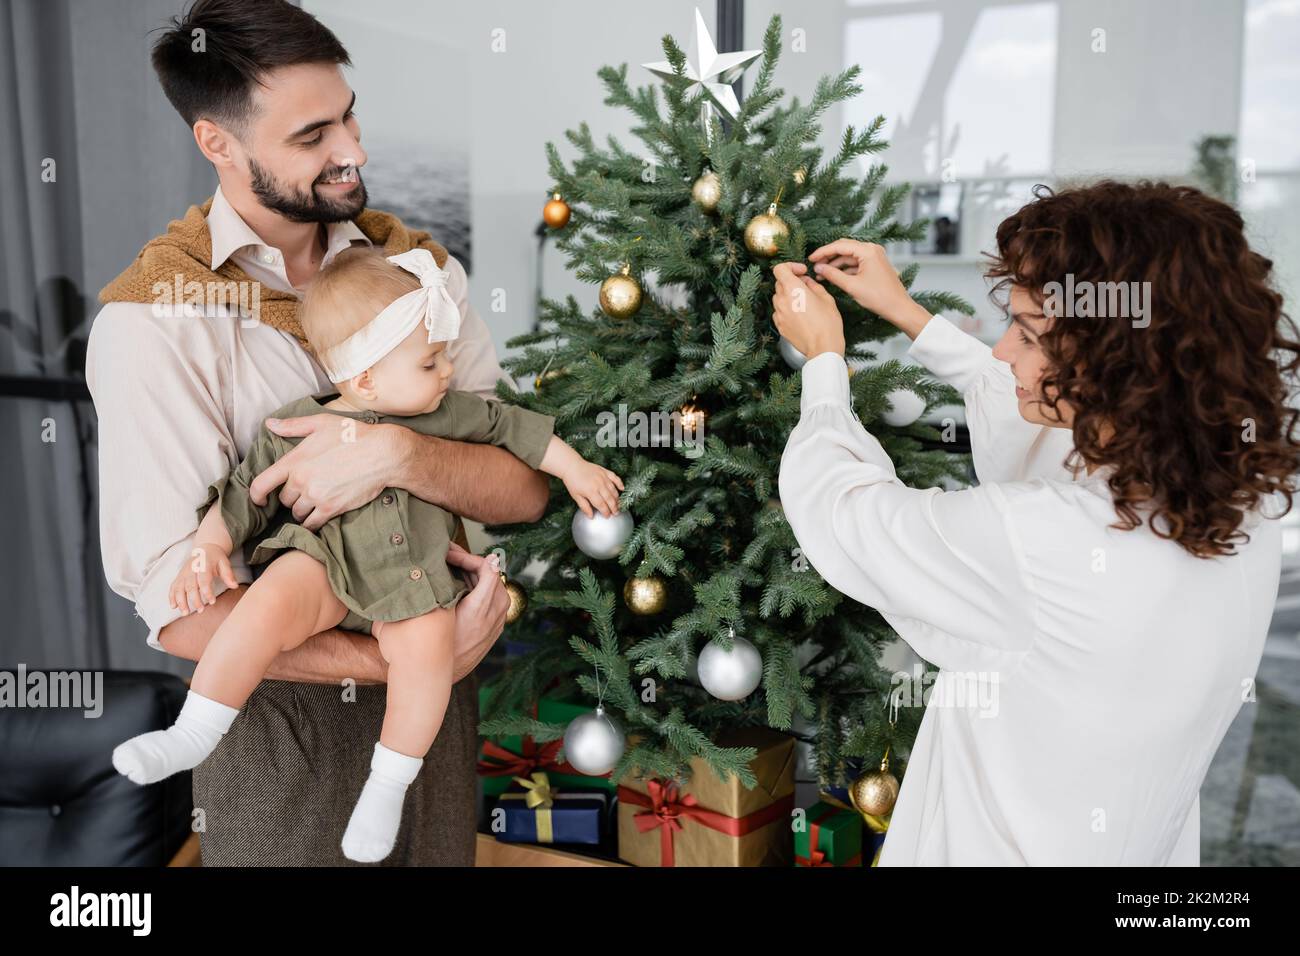 mujer feliz que adorna el árbol de navidad cerca del marido barbudo y la hija del bebé, imagen de la acción Foto de stock